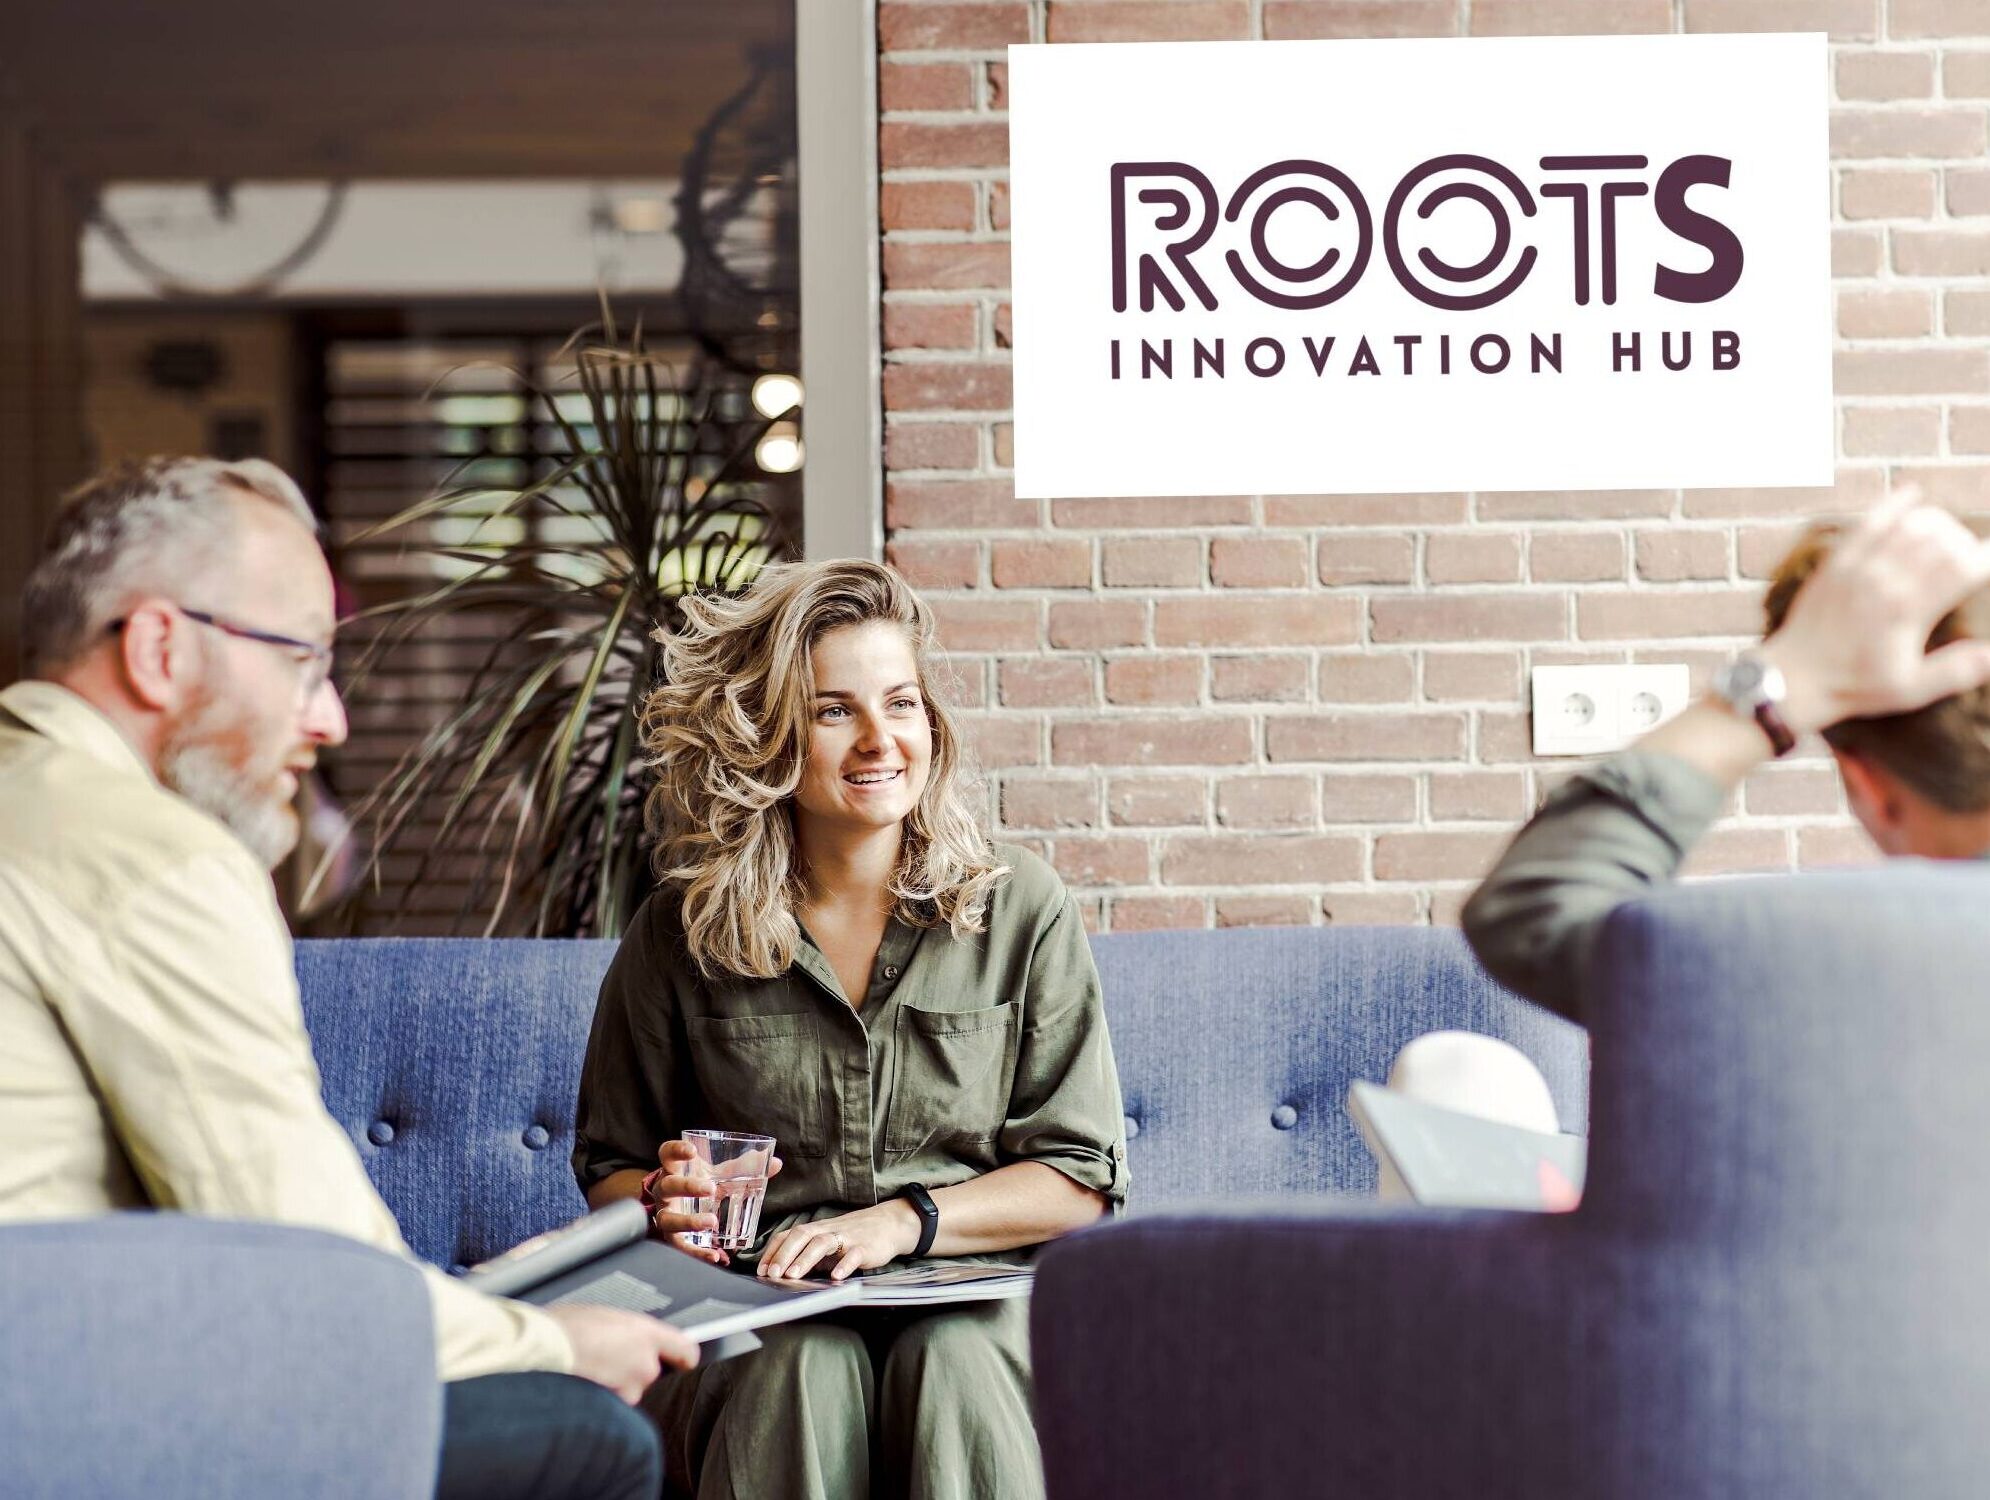 3 personen op sofa's met op de achtergrond een bord met de tekst 'Roots Innovation Hub'